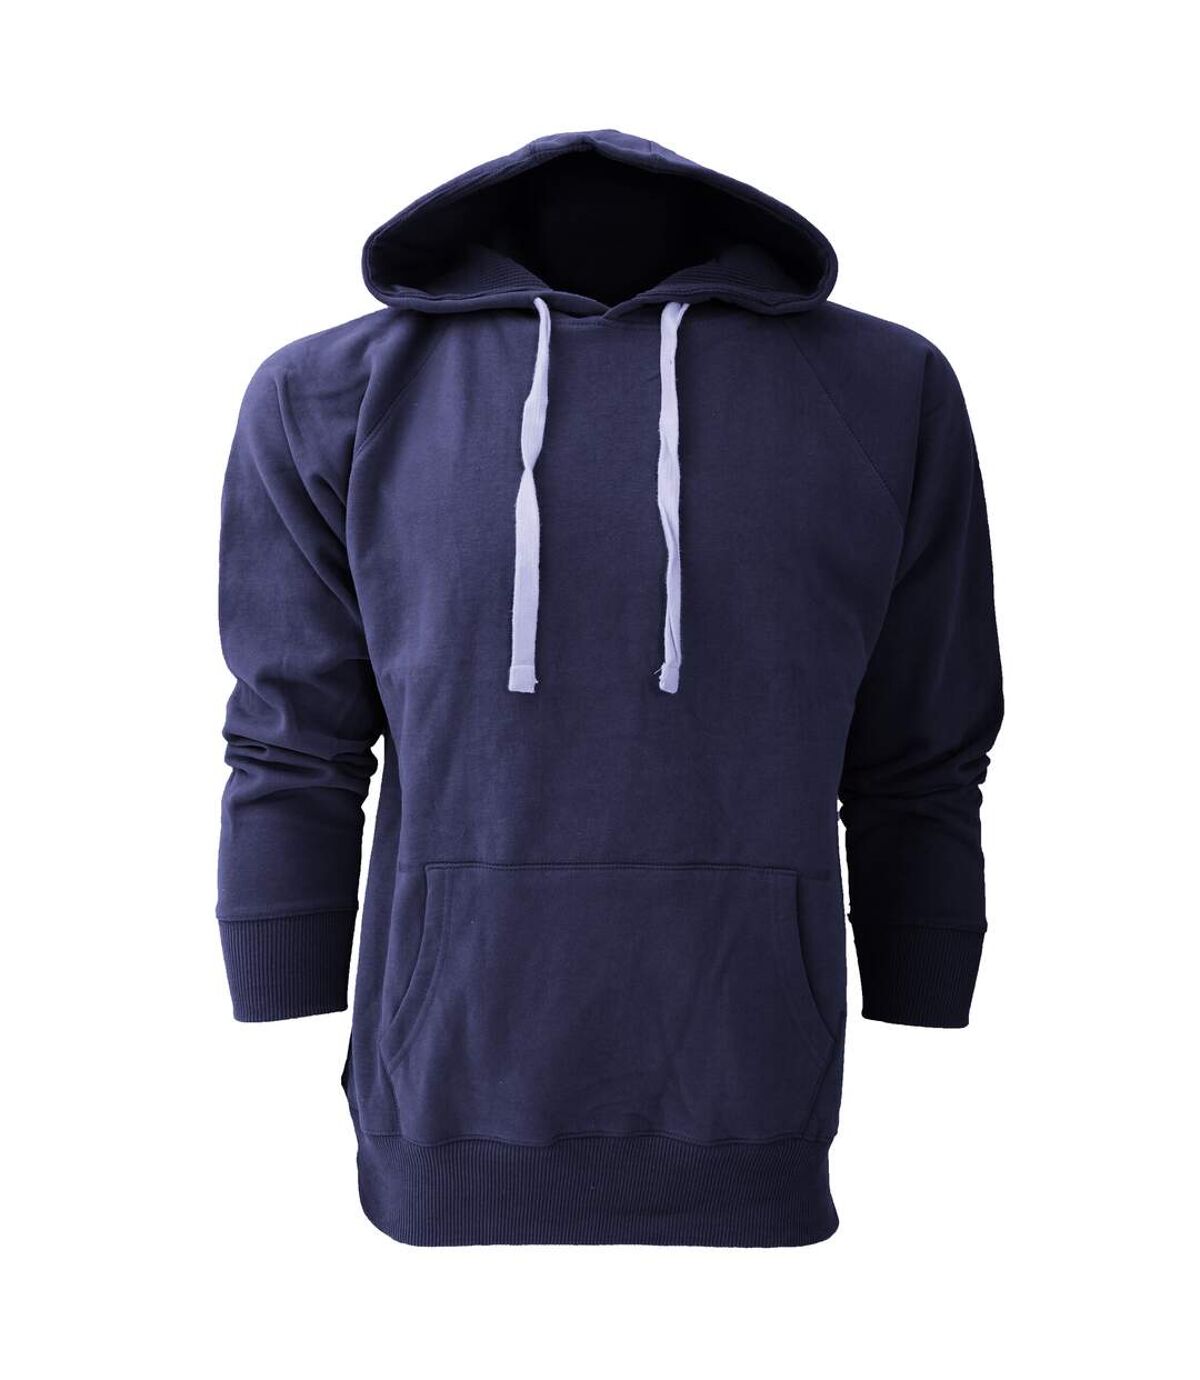 Sweatshirt à capuche Mantis pour homme (Bleu marine) - UTBC679